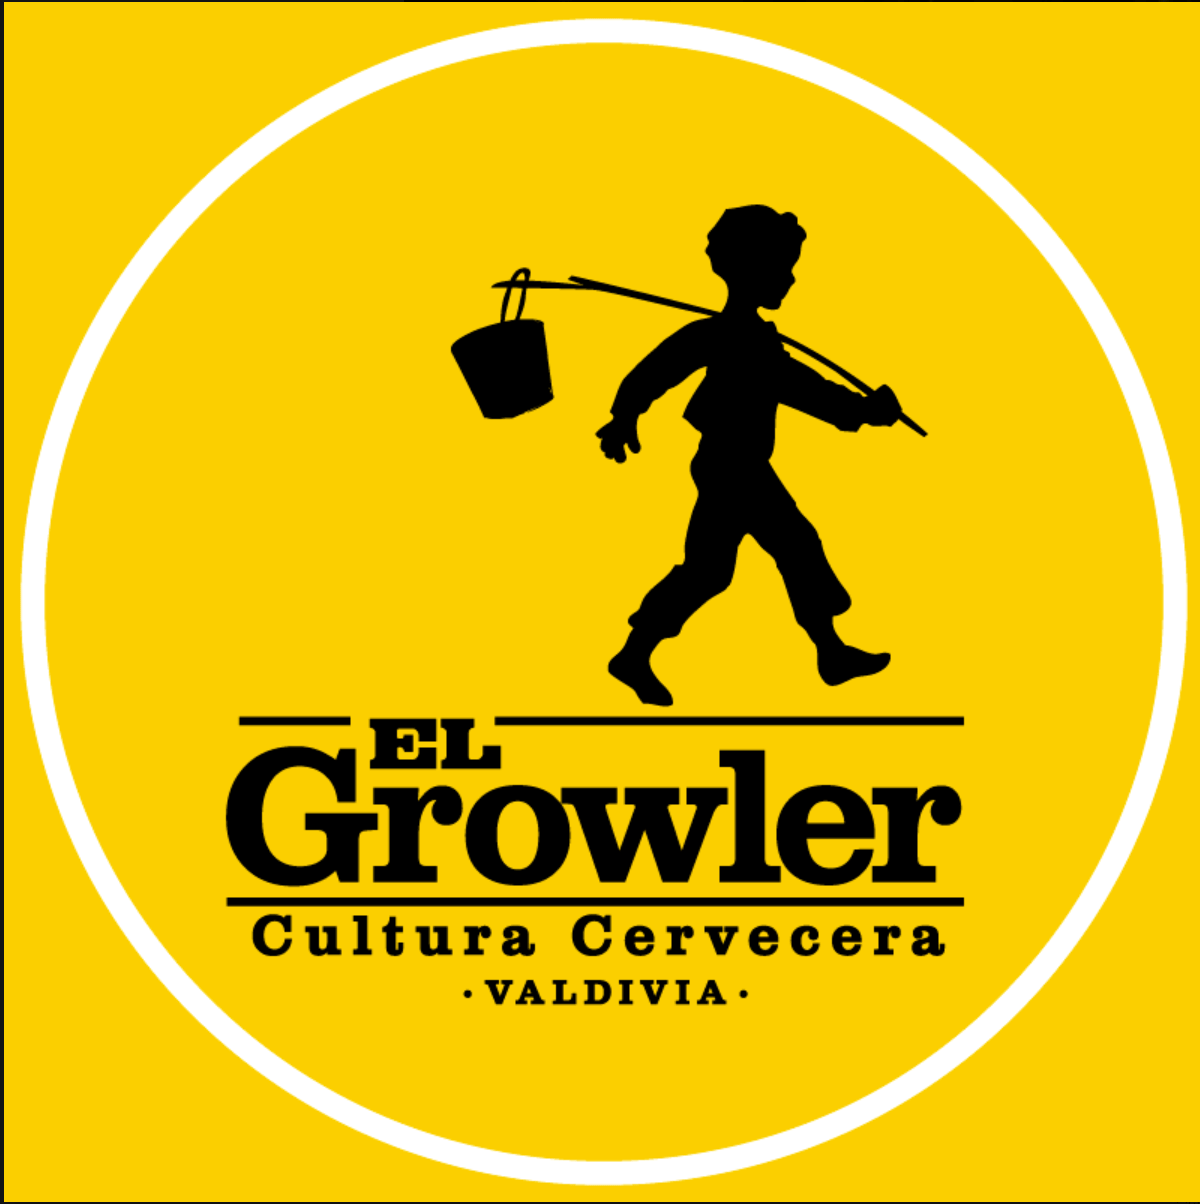 Growler